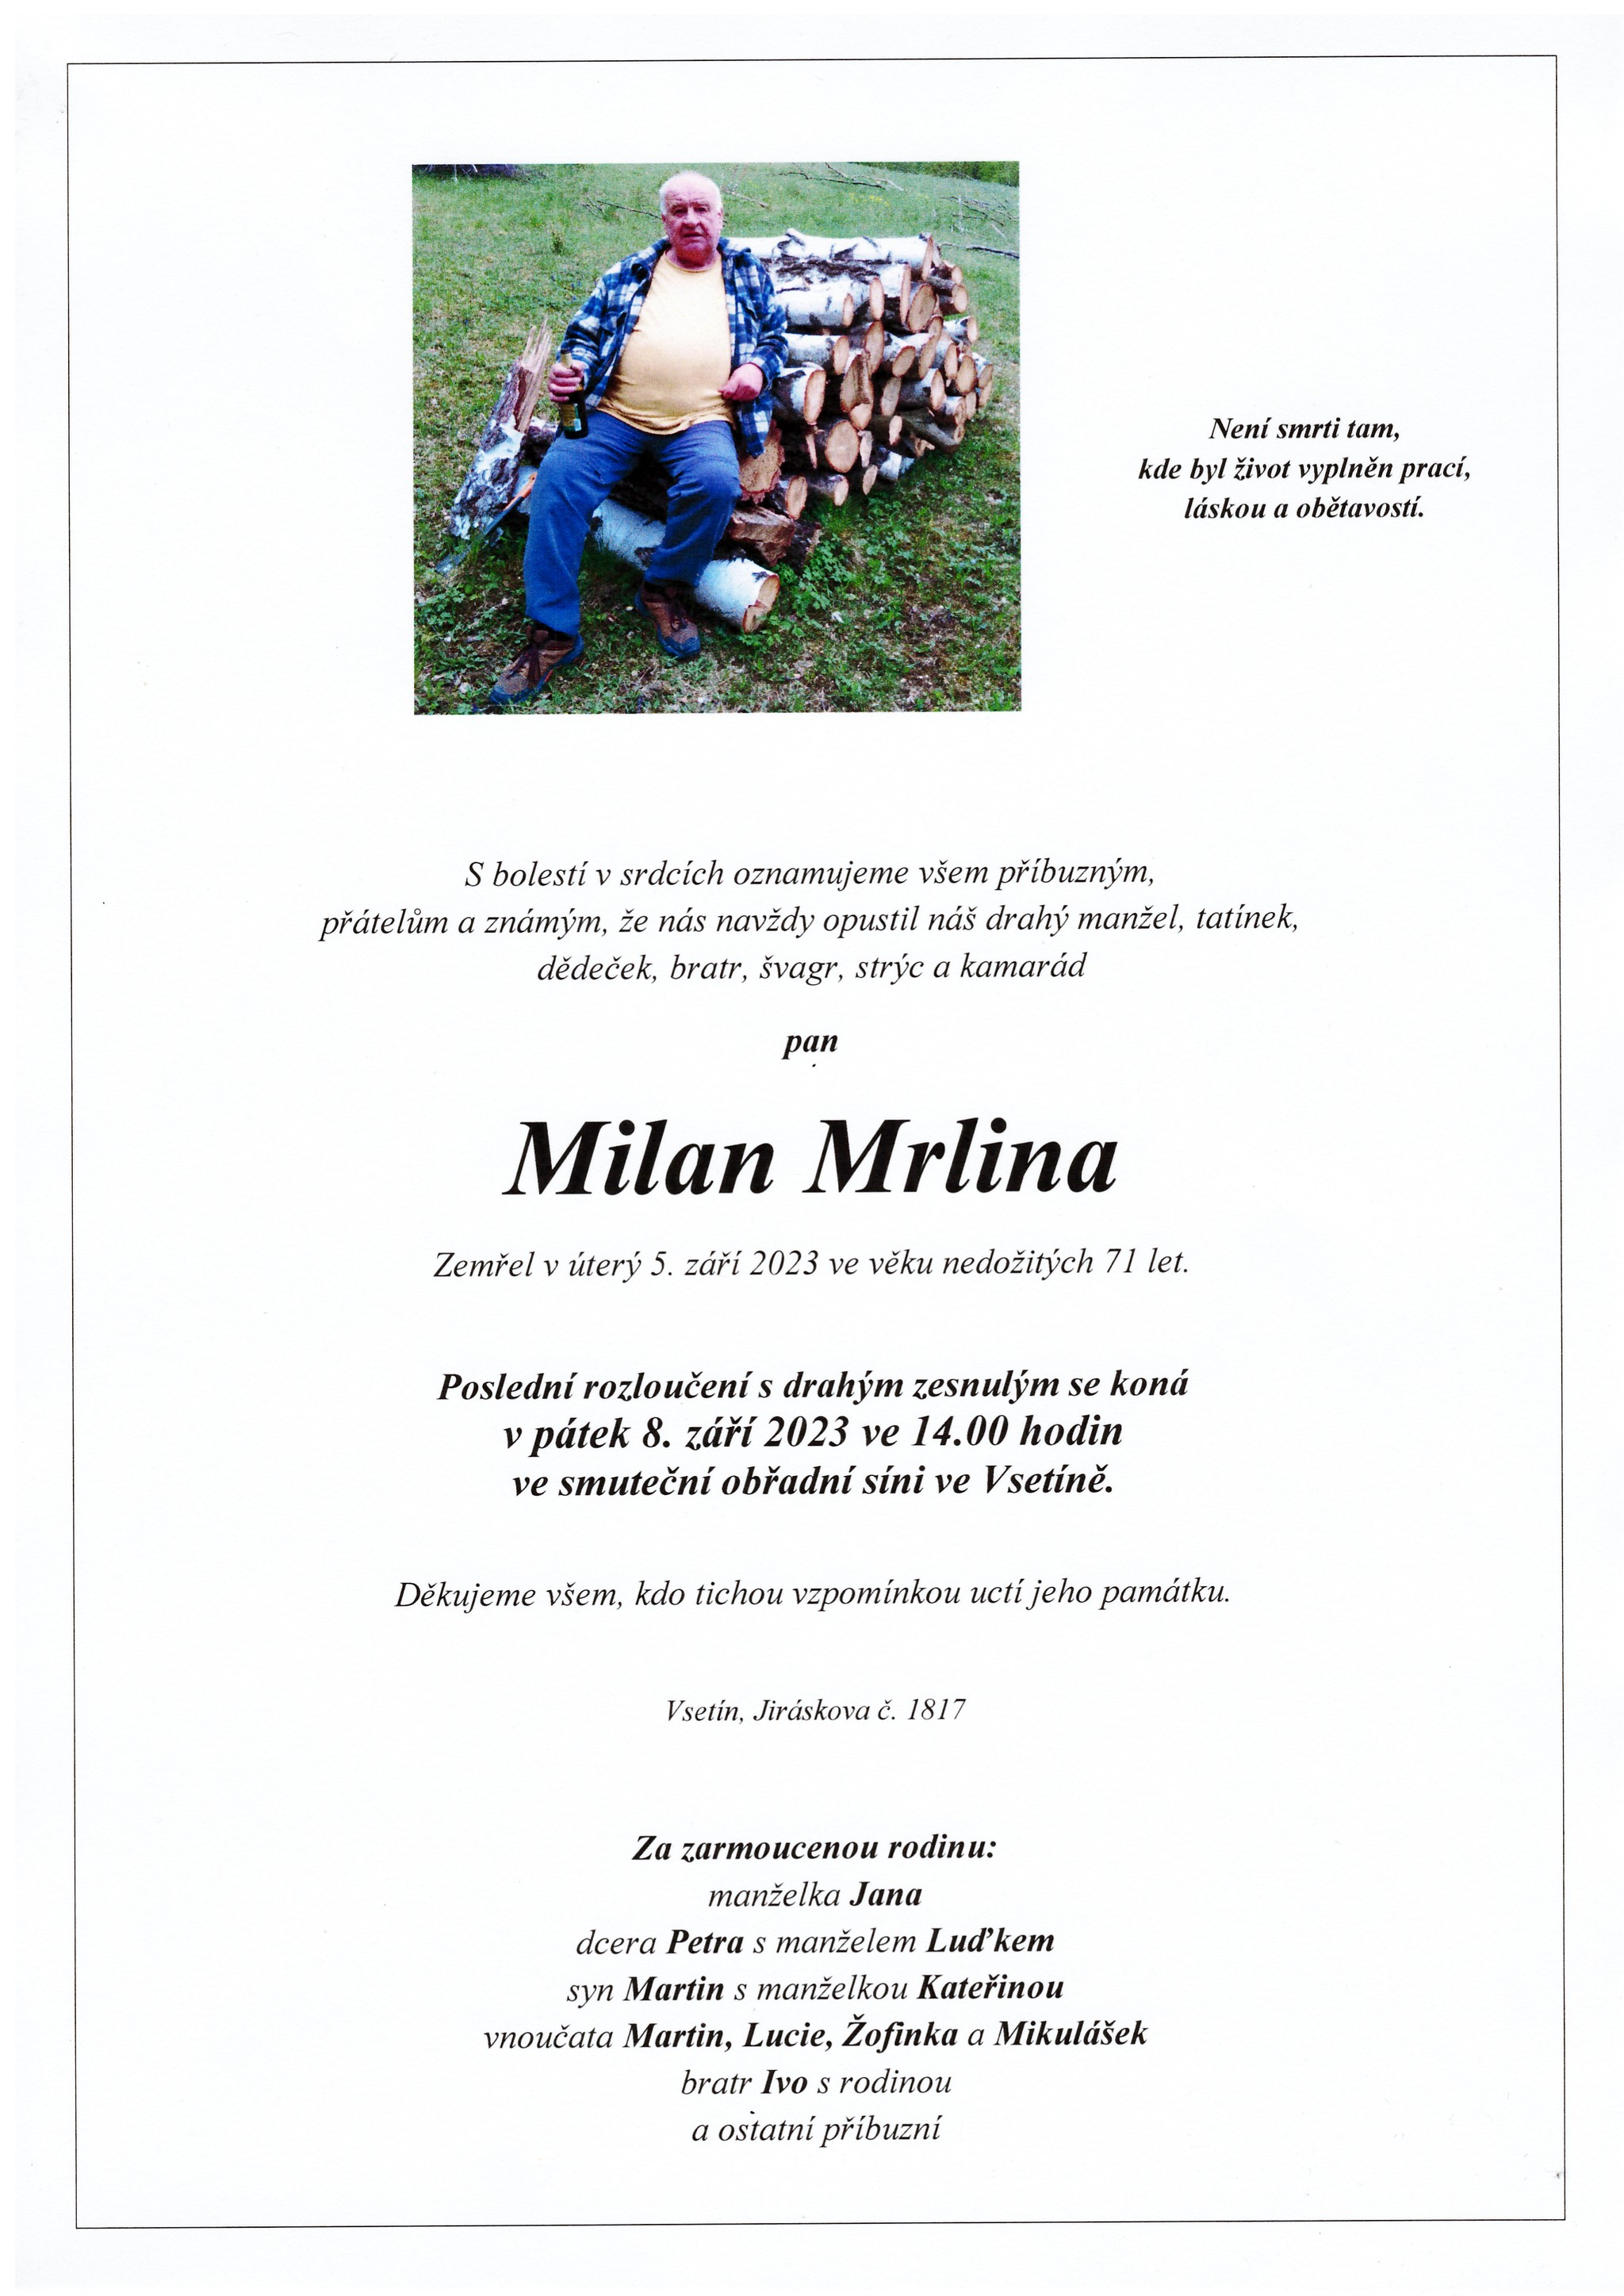 Milan Mrlina